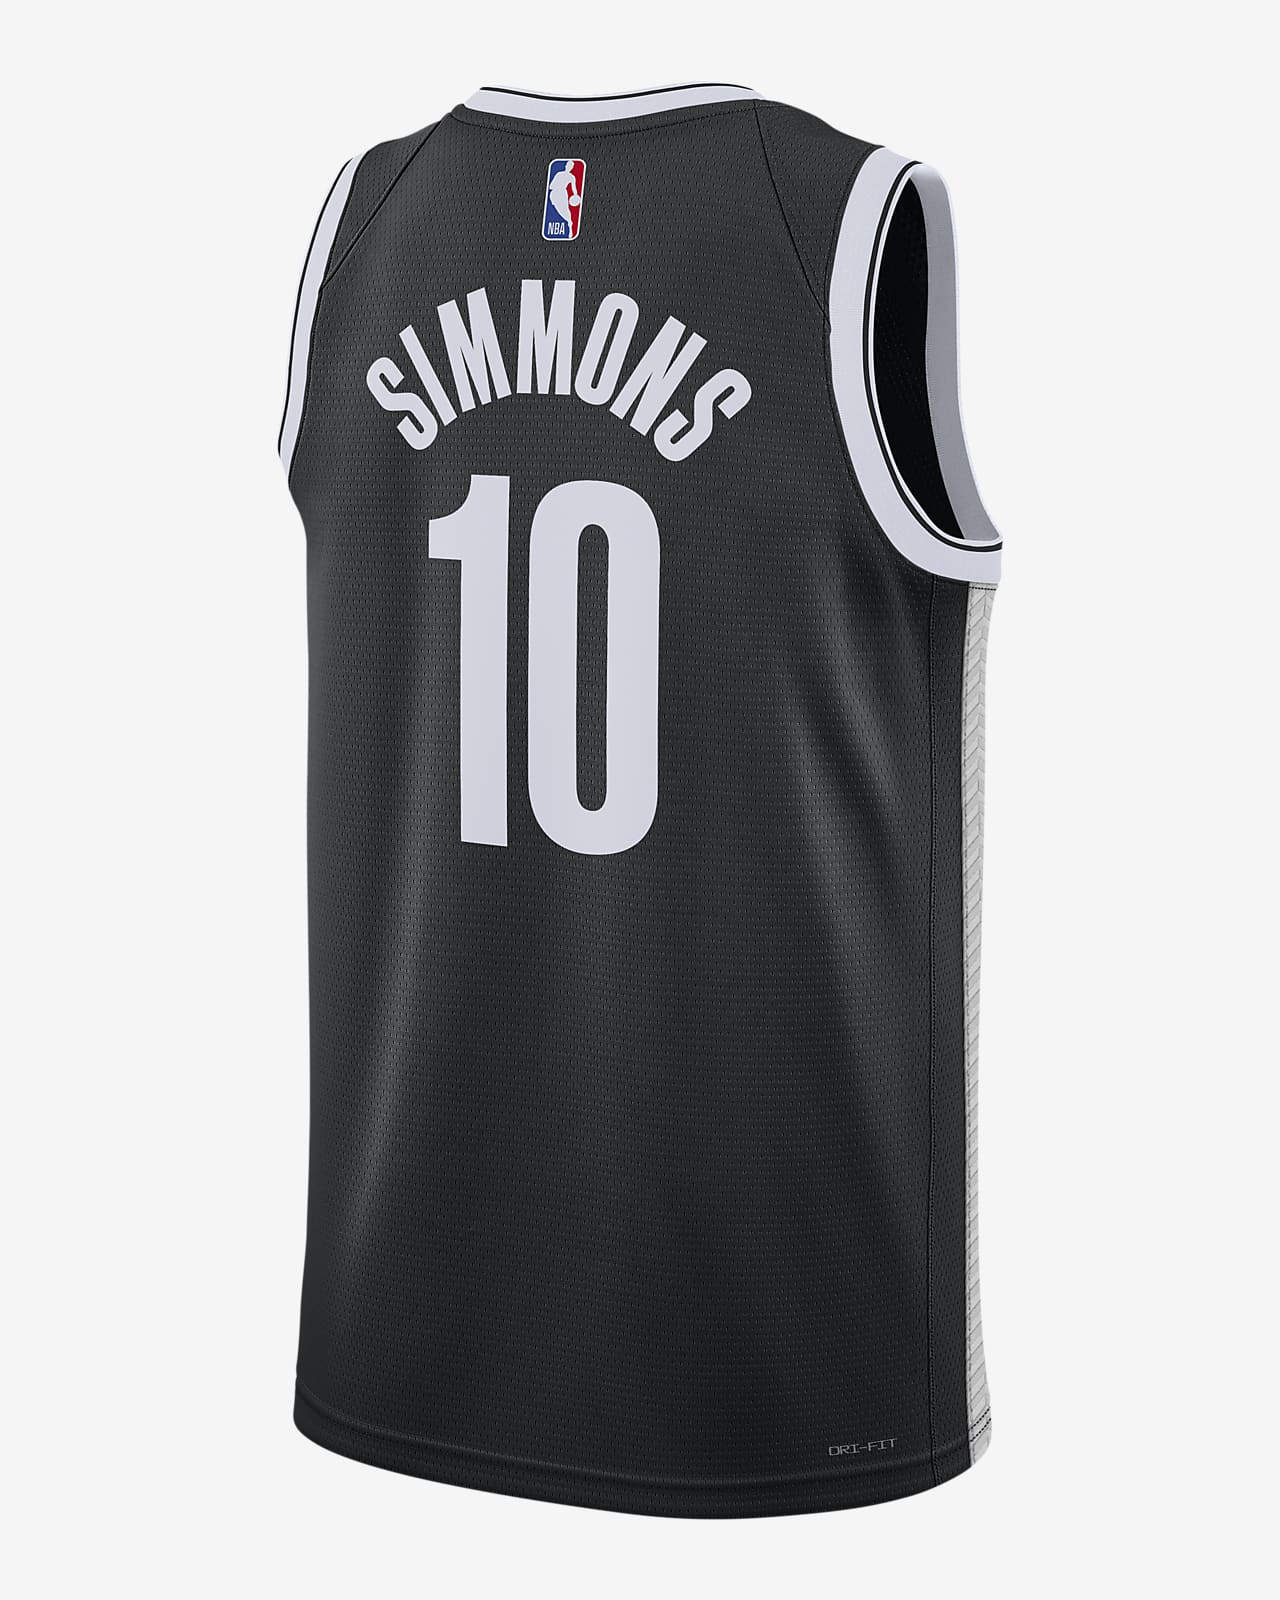 Brooklyn Nets Jerseys & Gear. Nike CA